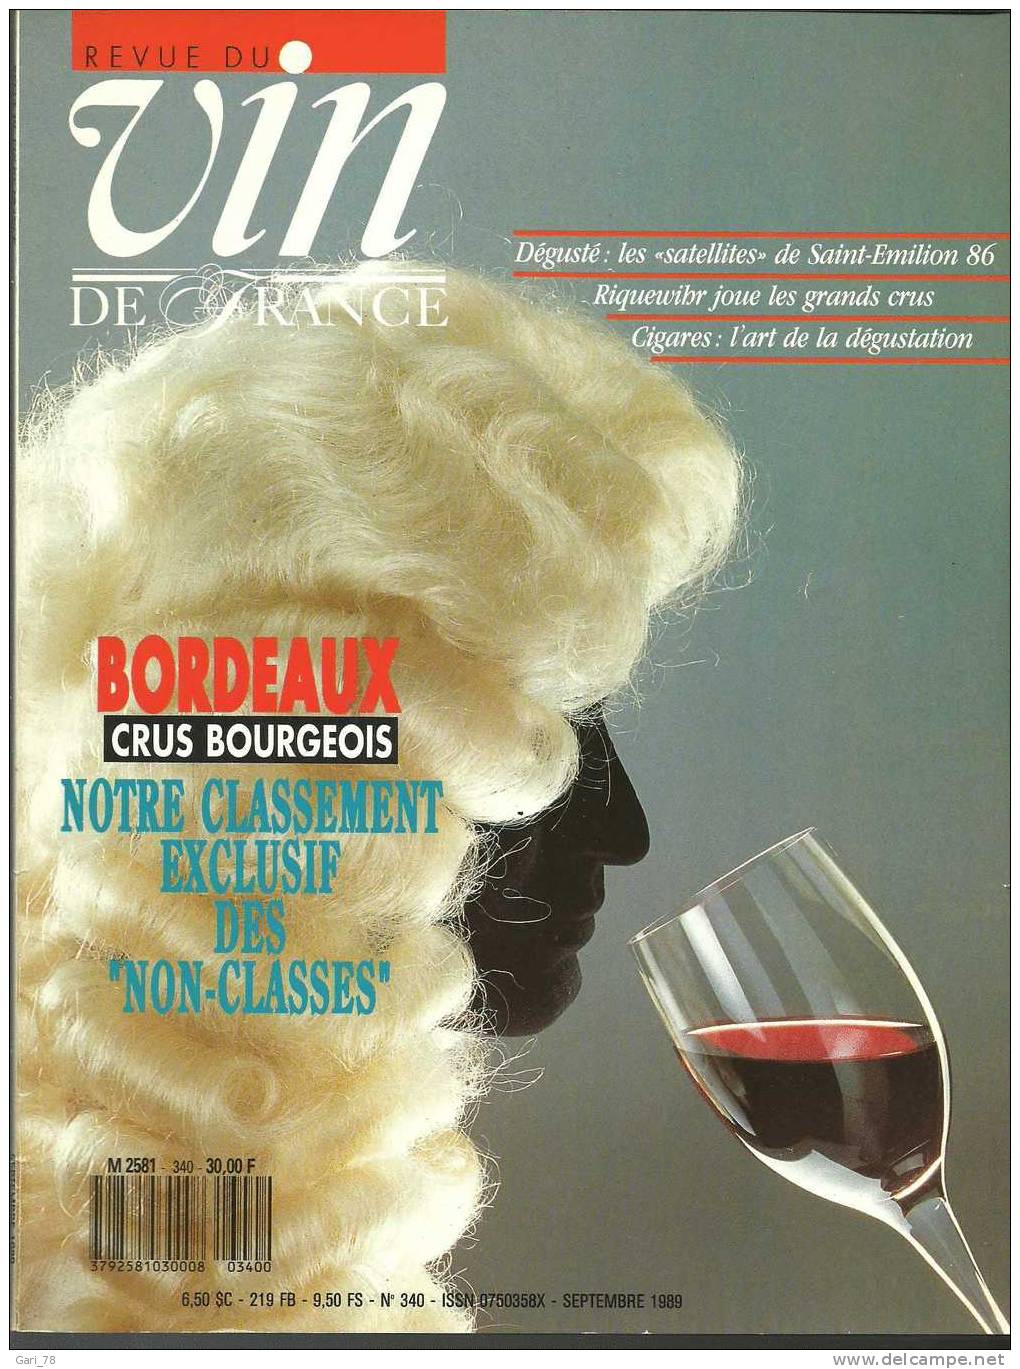 Revue Du VIN DE FRANCE N° 340 - Septembre 1989 : Bordeaux Crus Bourgeois, Classement "non Classés"  Riquewihr Etc - Cooking & Wines